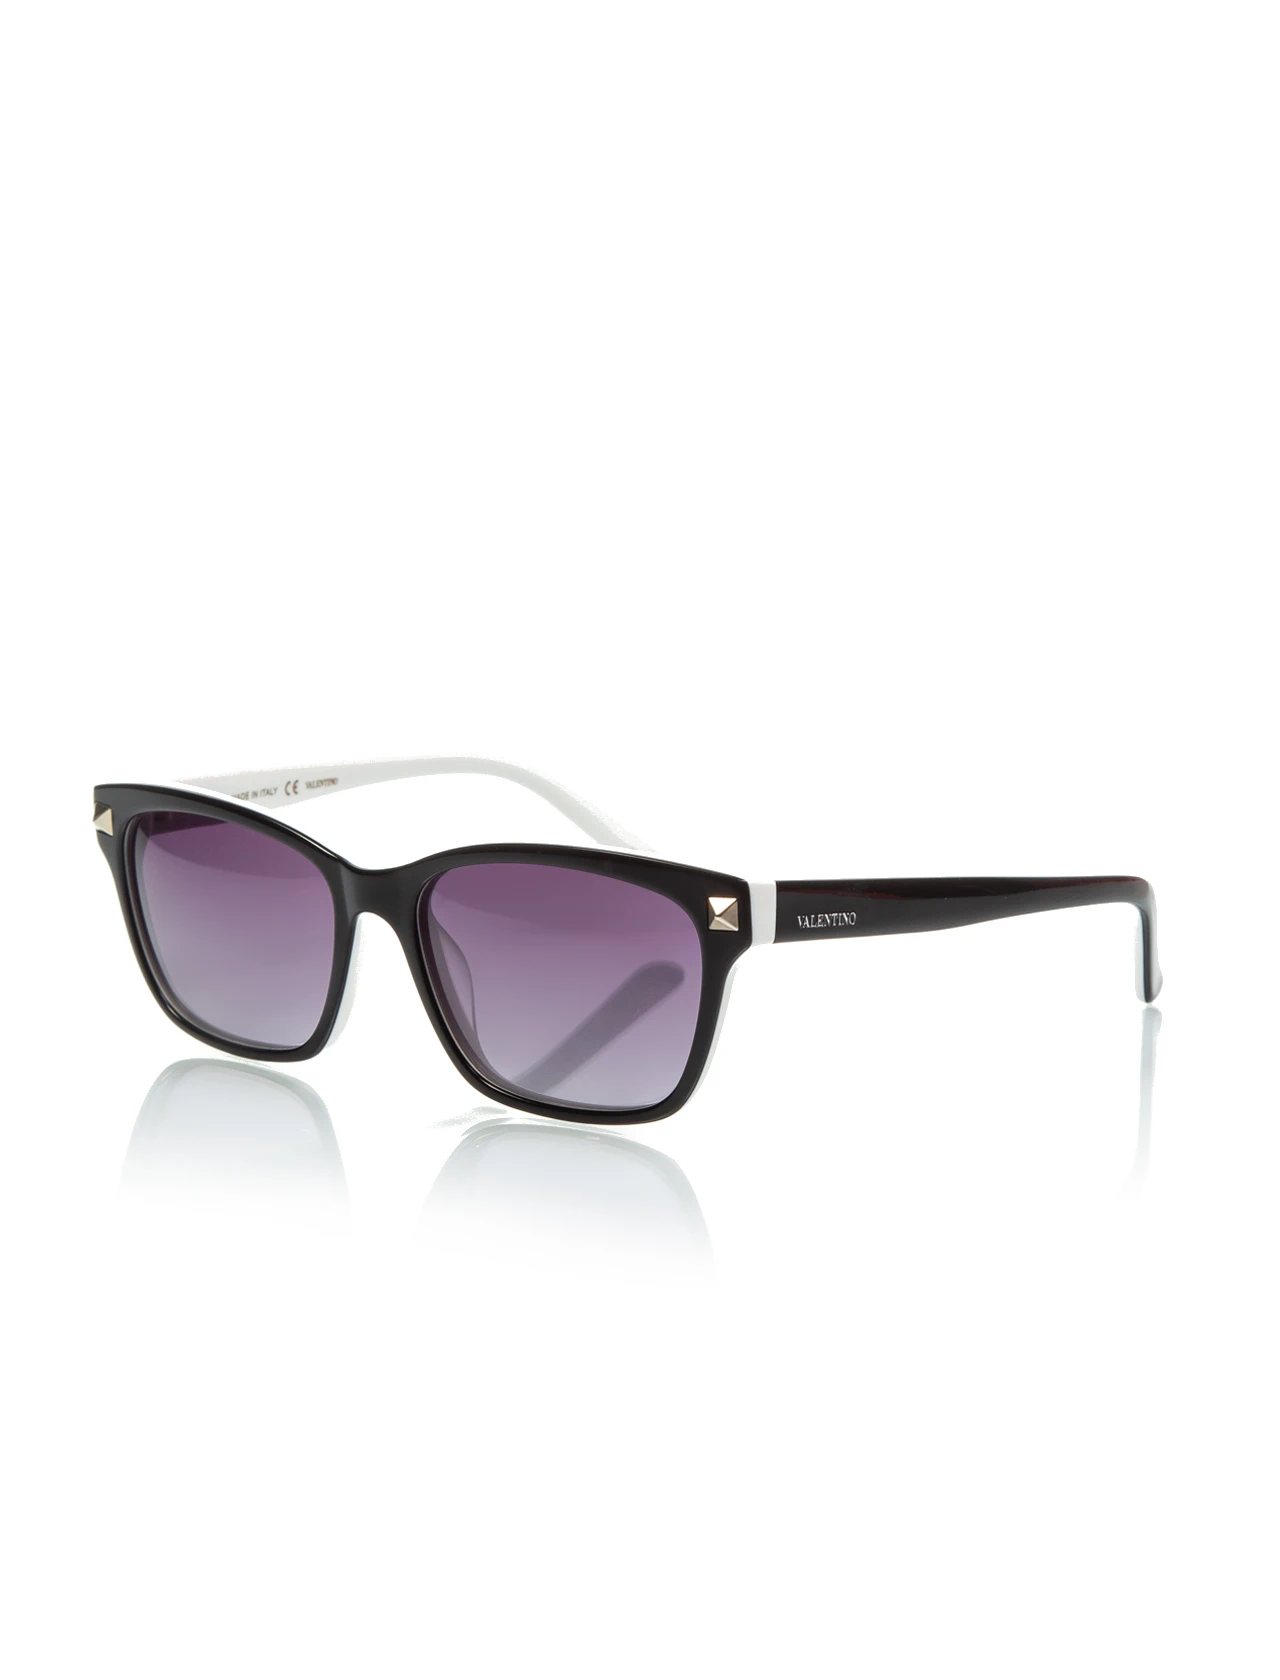 

Women's sunglasses val 2667 015 bone black organic square square 53-16-135 valentino